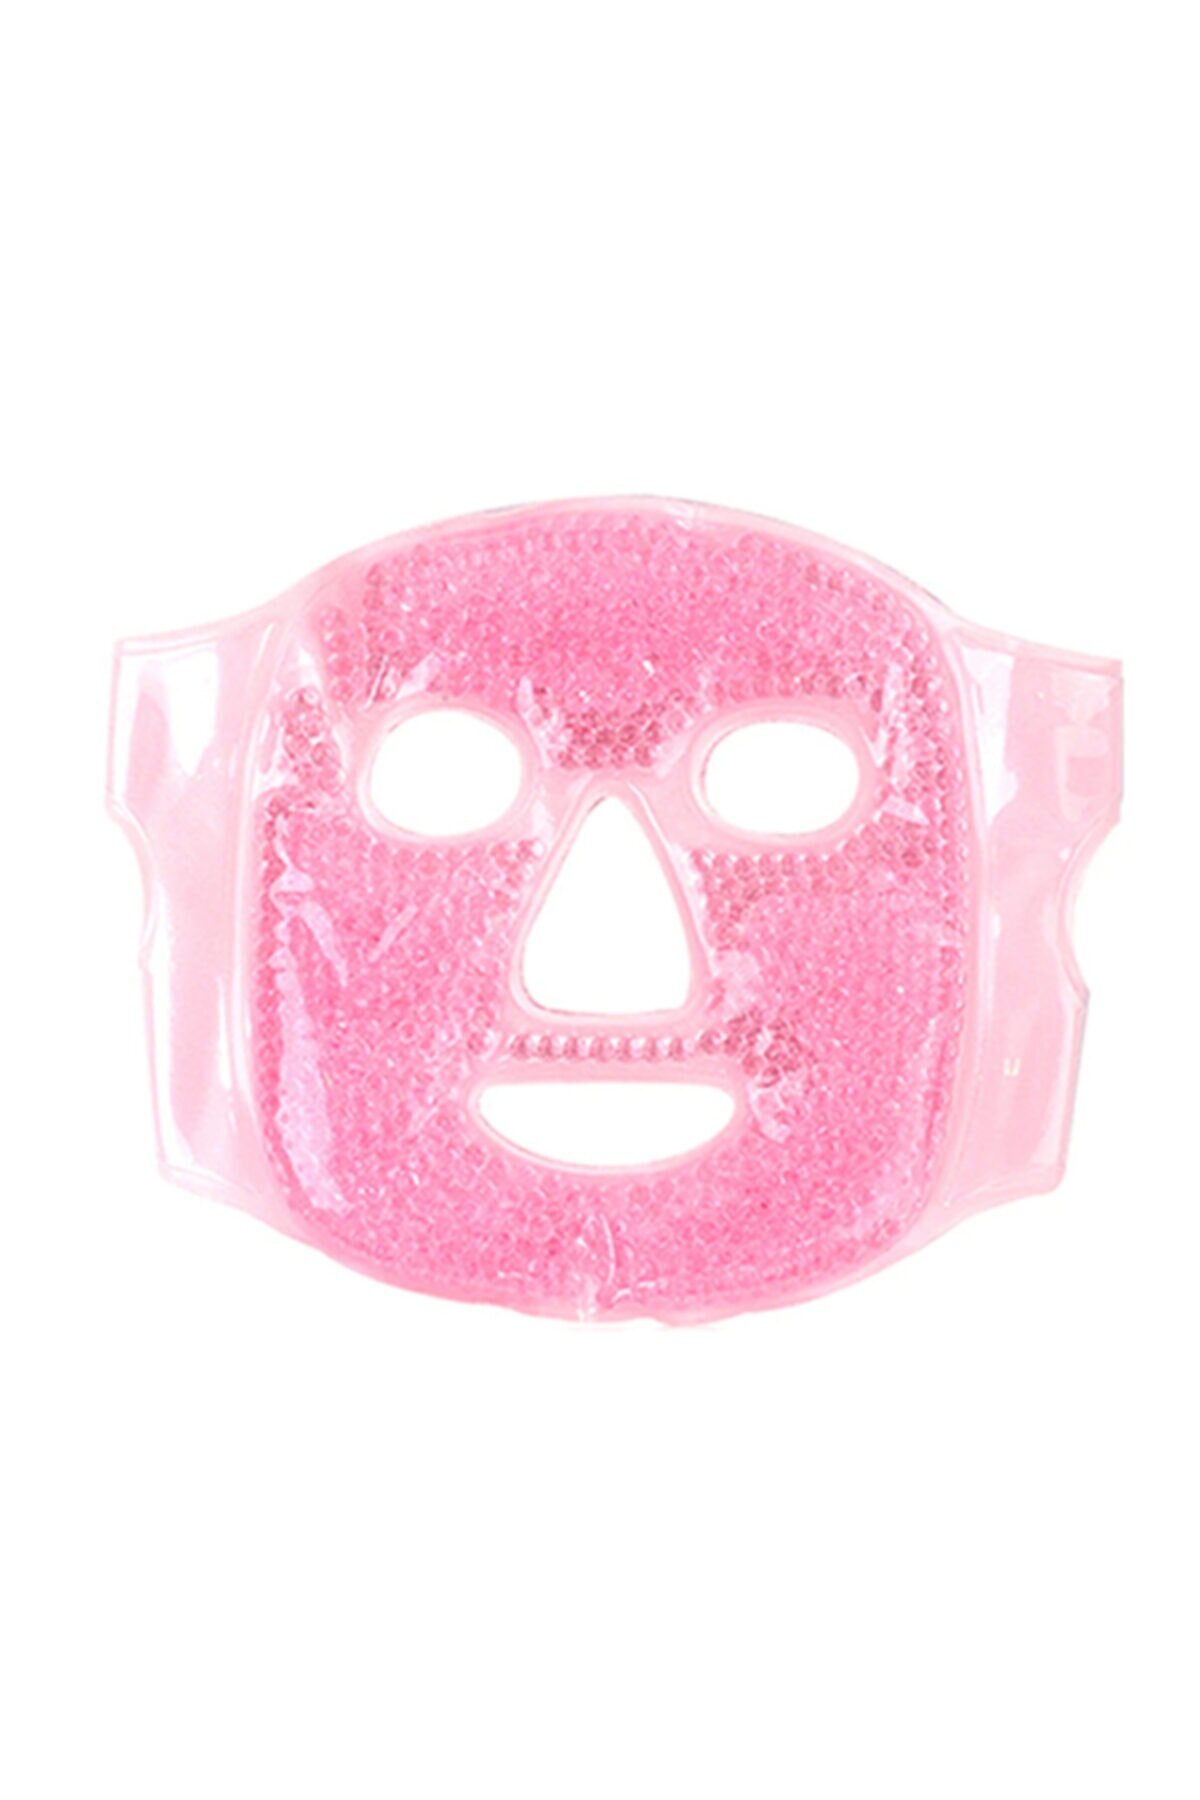 CLZ174 Jel Boncuklu Yüz Maskesi -Soğuk Sıcak Jel Yüz Maskesi Buz -Sıcak Press